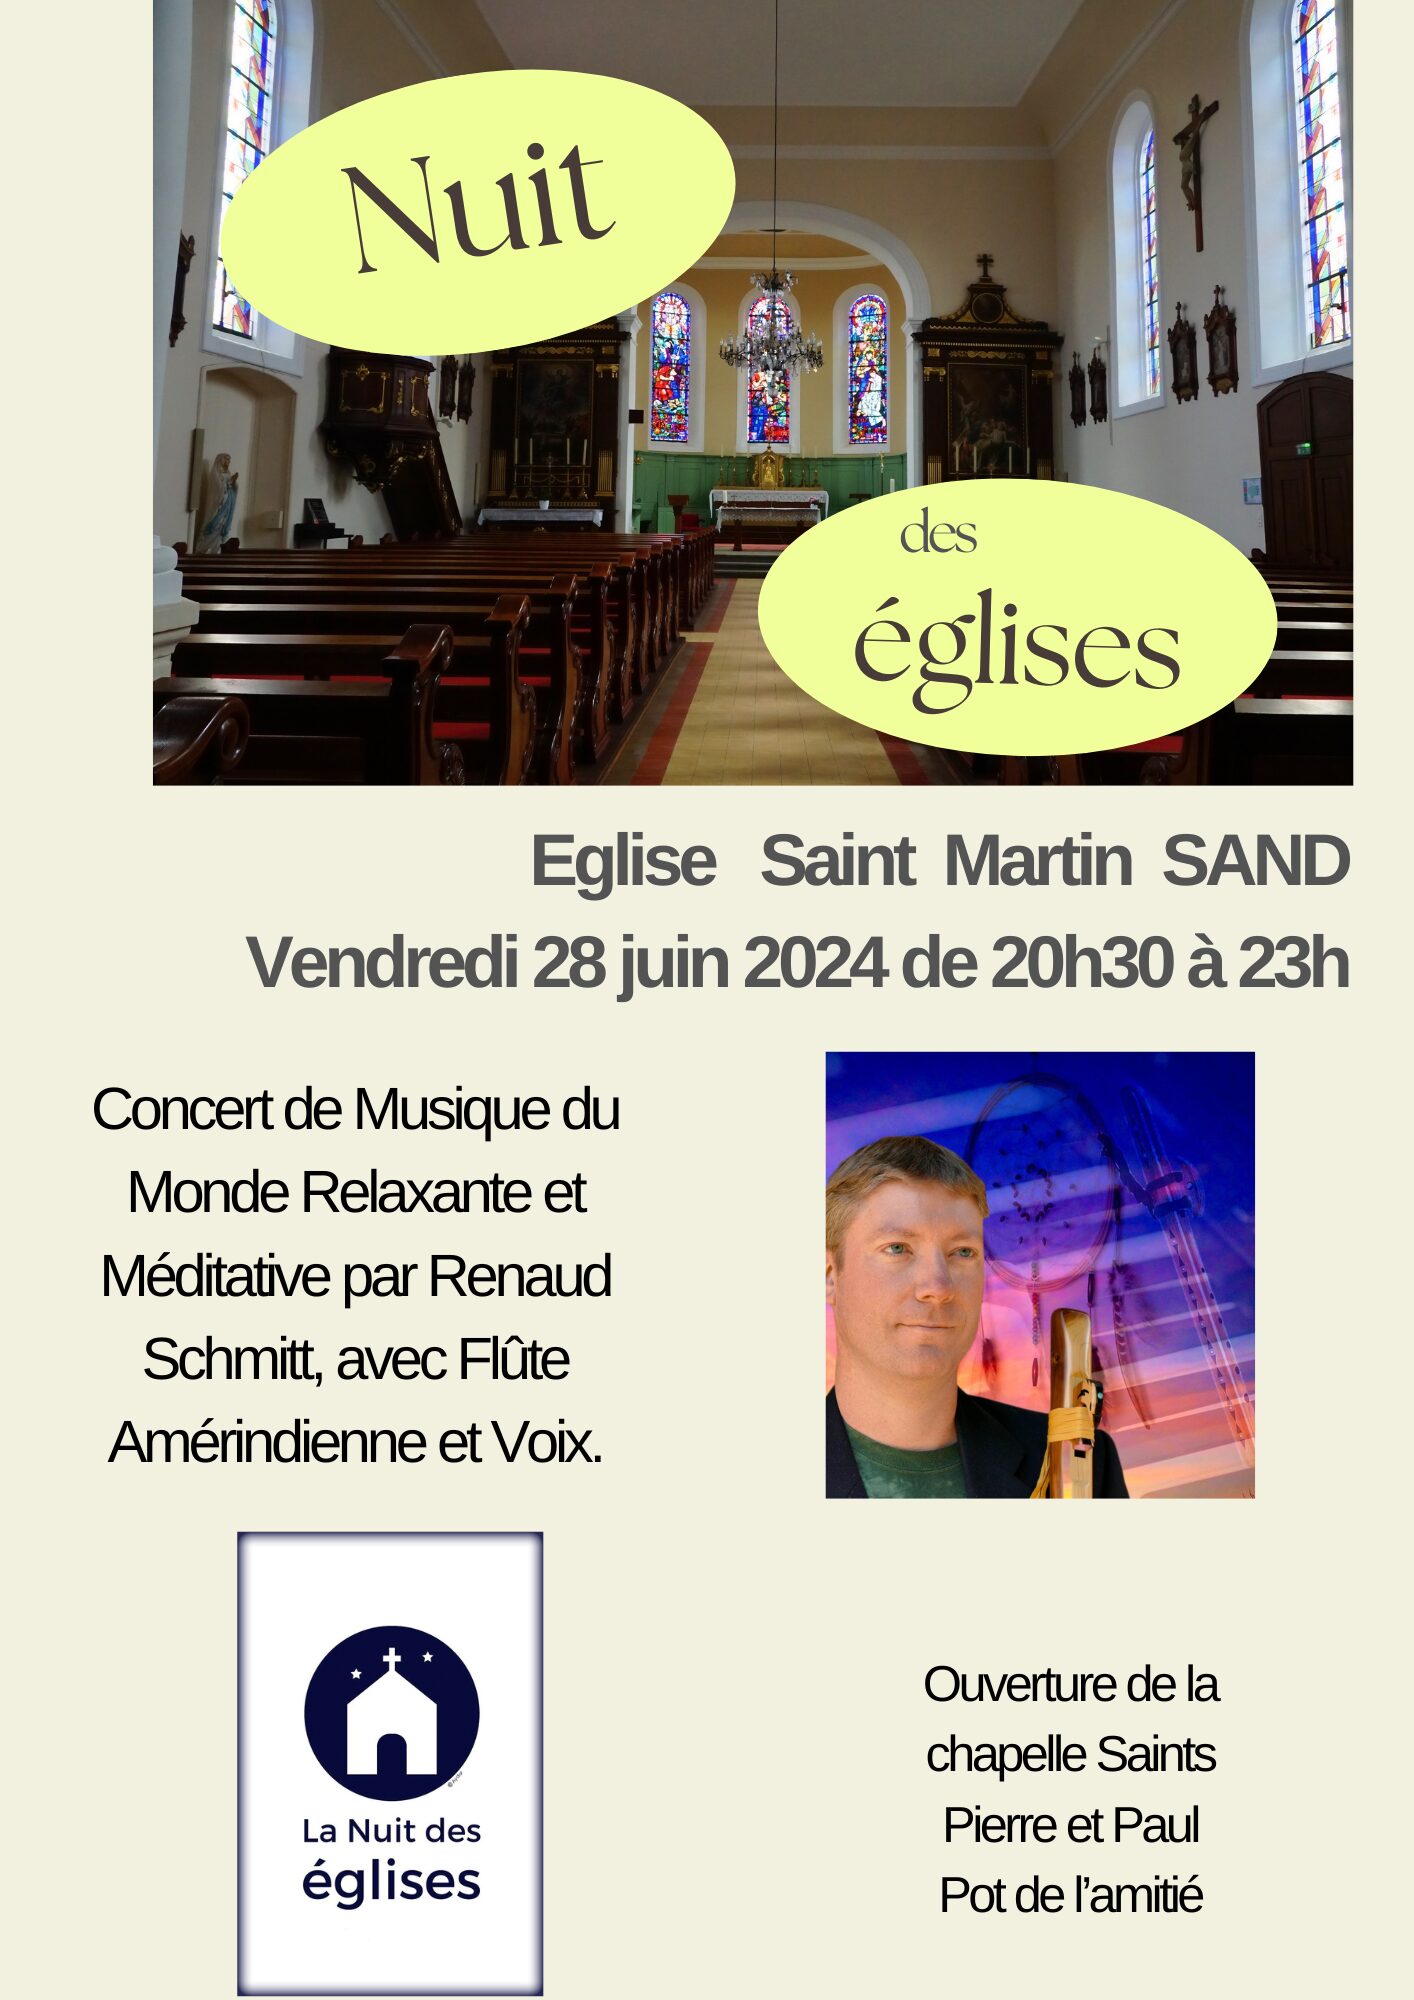 Nuit des églises 28 juin 2024 (Flyer (A4))